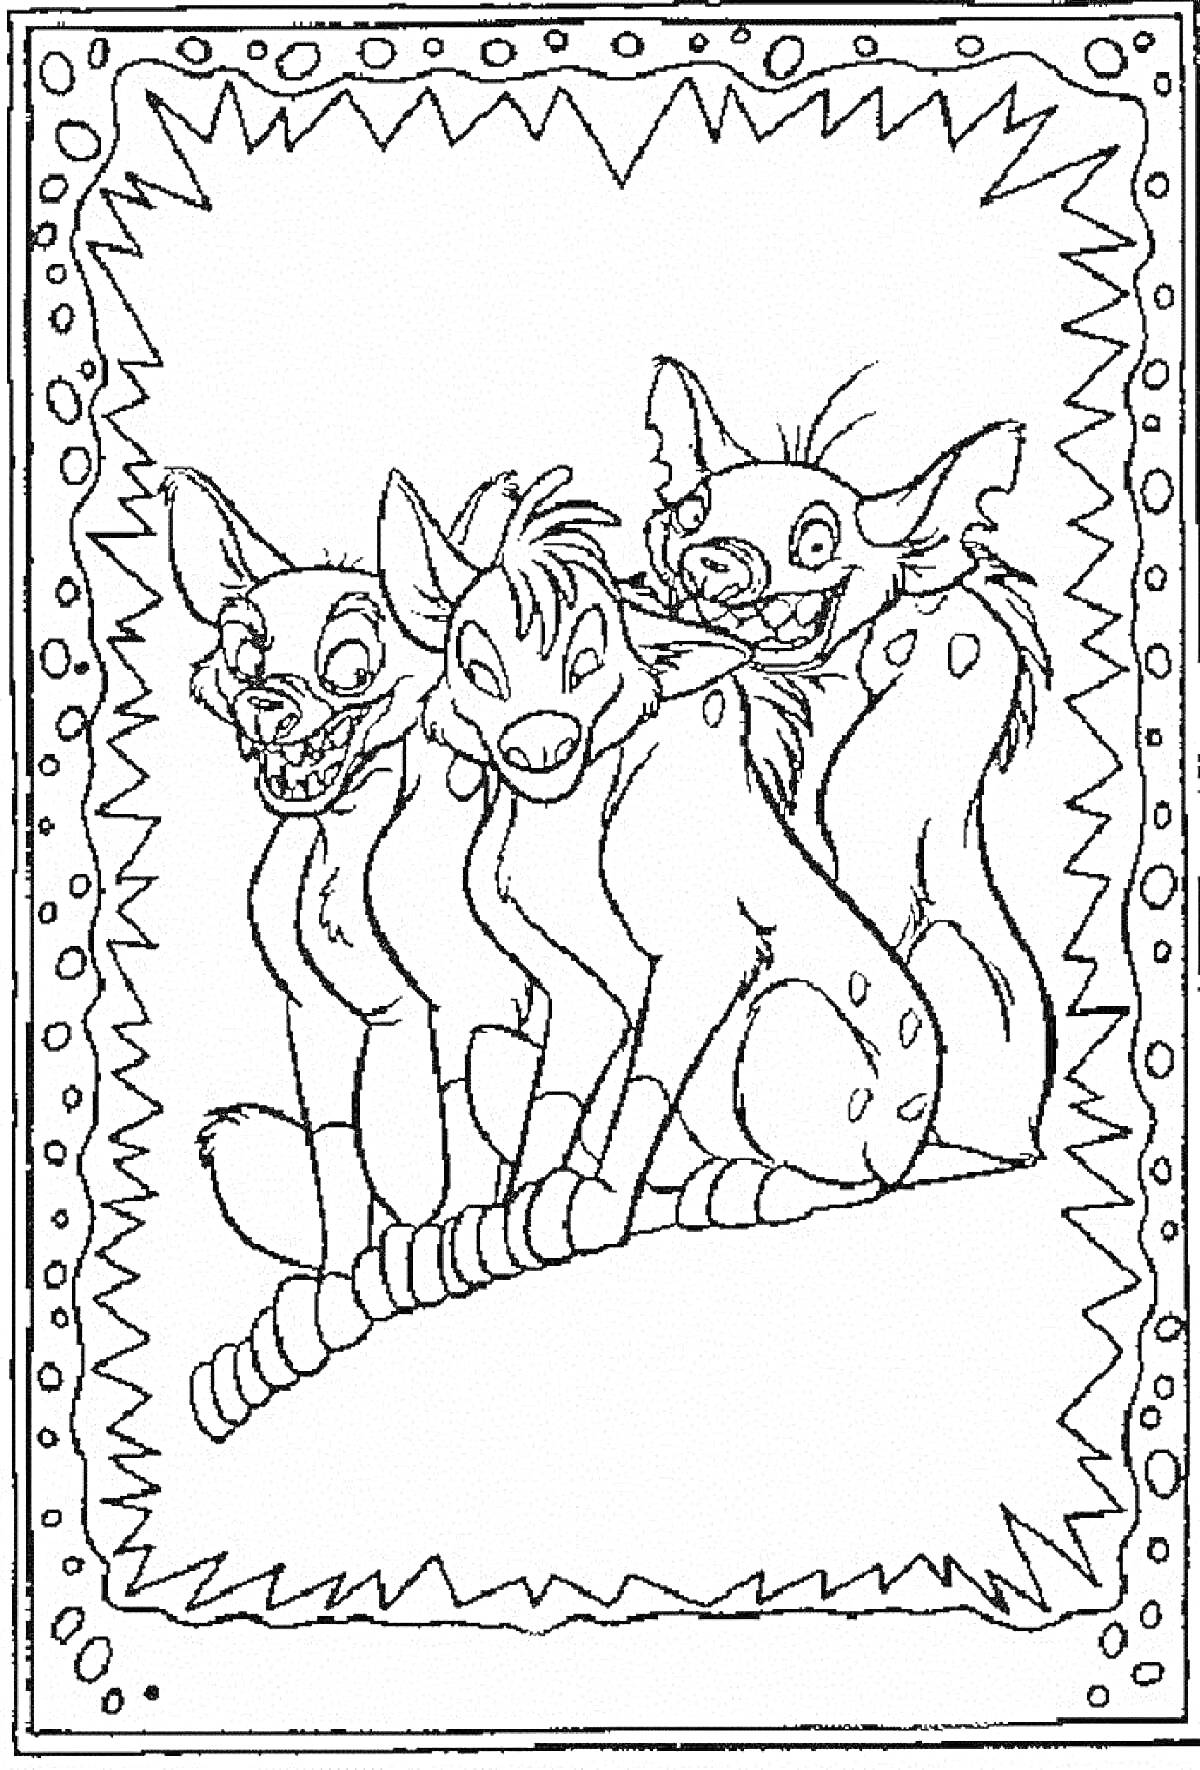 Раскраска Три стоящие гиены на фоне рамки с зигзагообразным узором